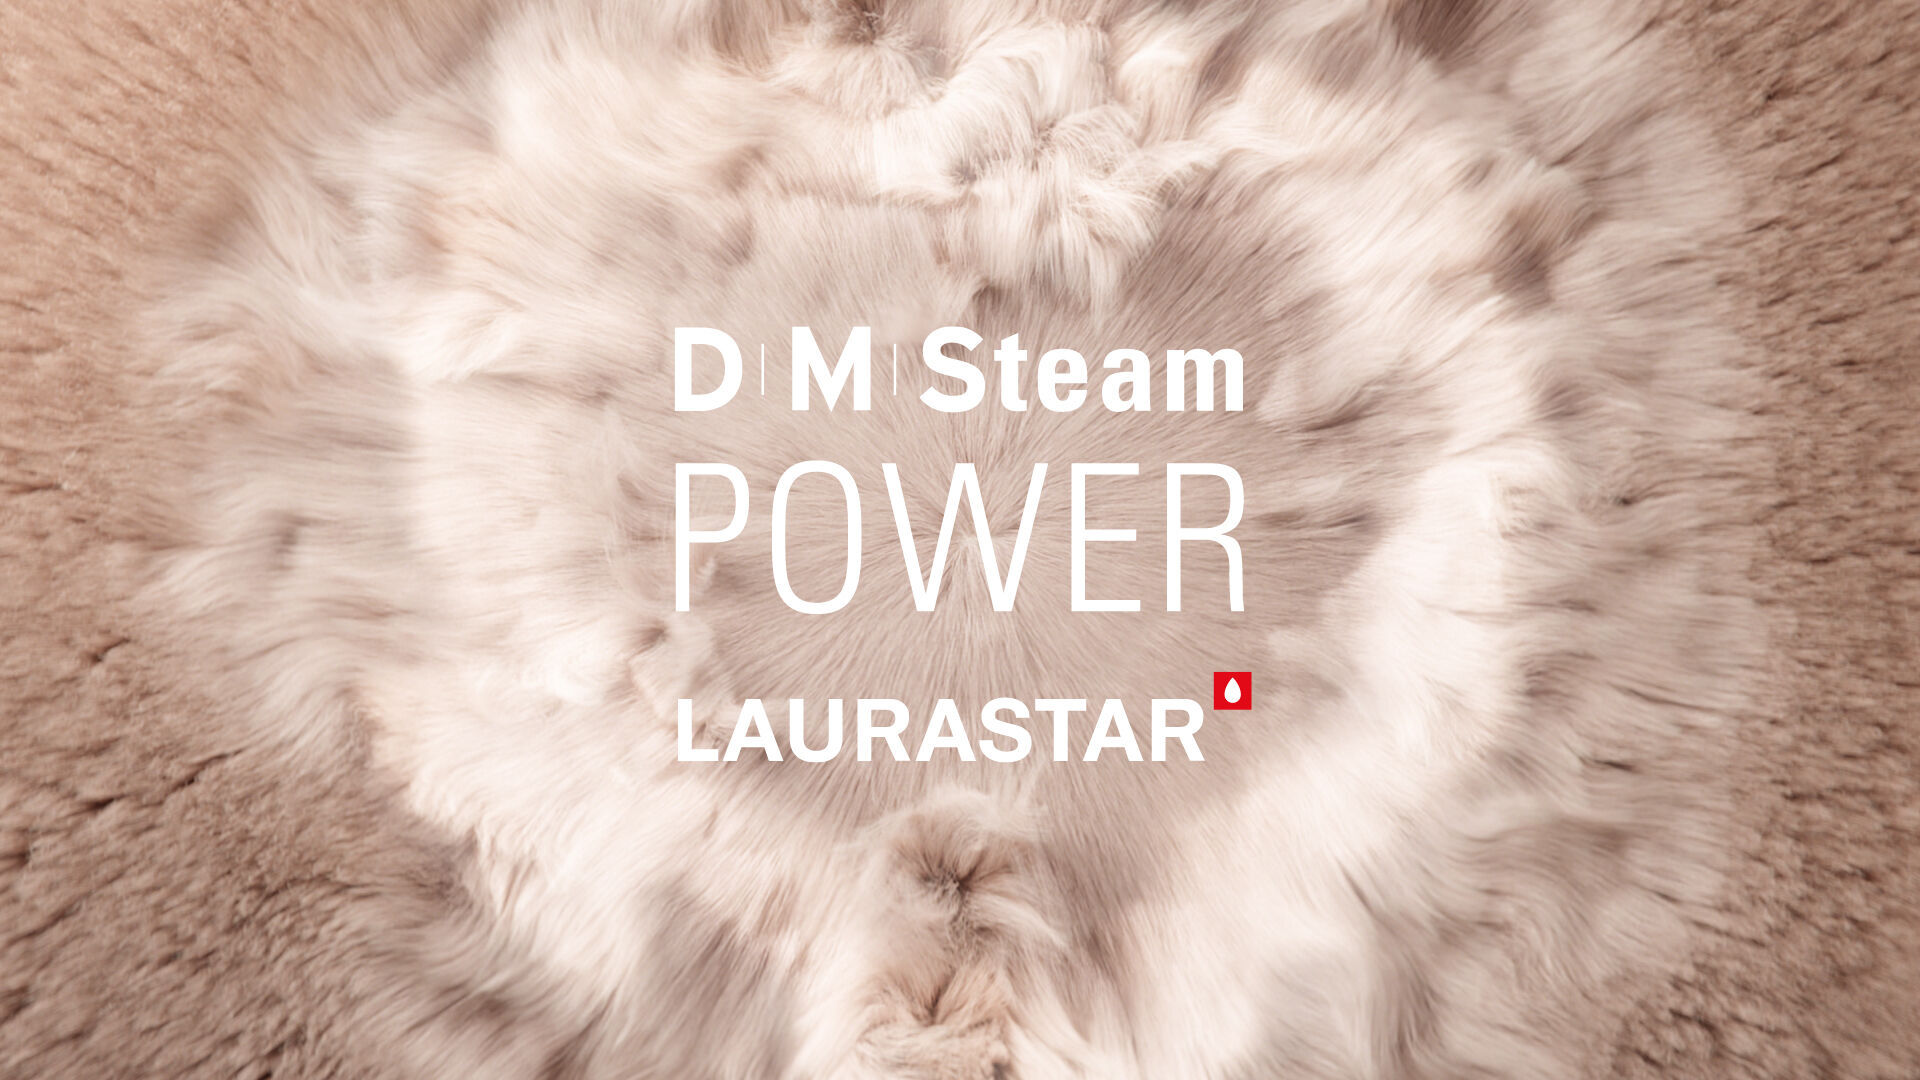 Vapore Laurastar DMS, una tecnologia che garantisce performance, cura e igiene ottimale di tutti i materiali